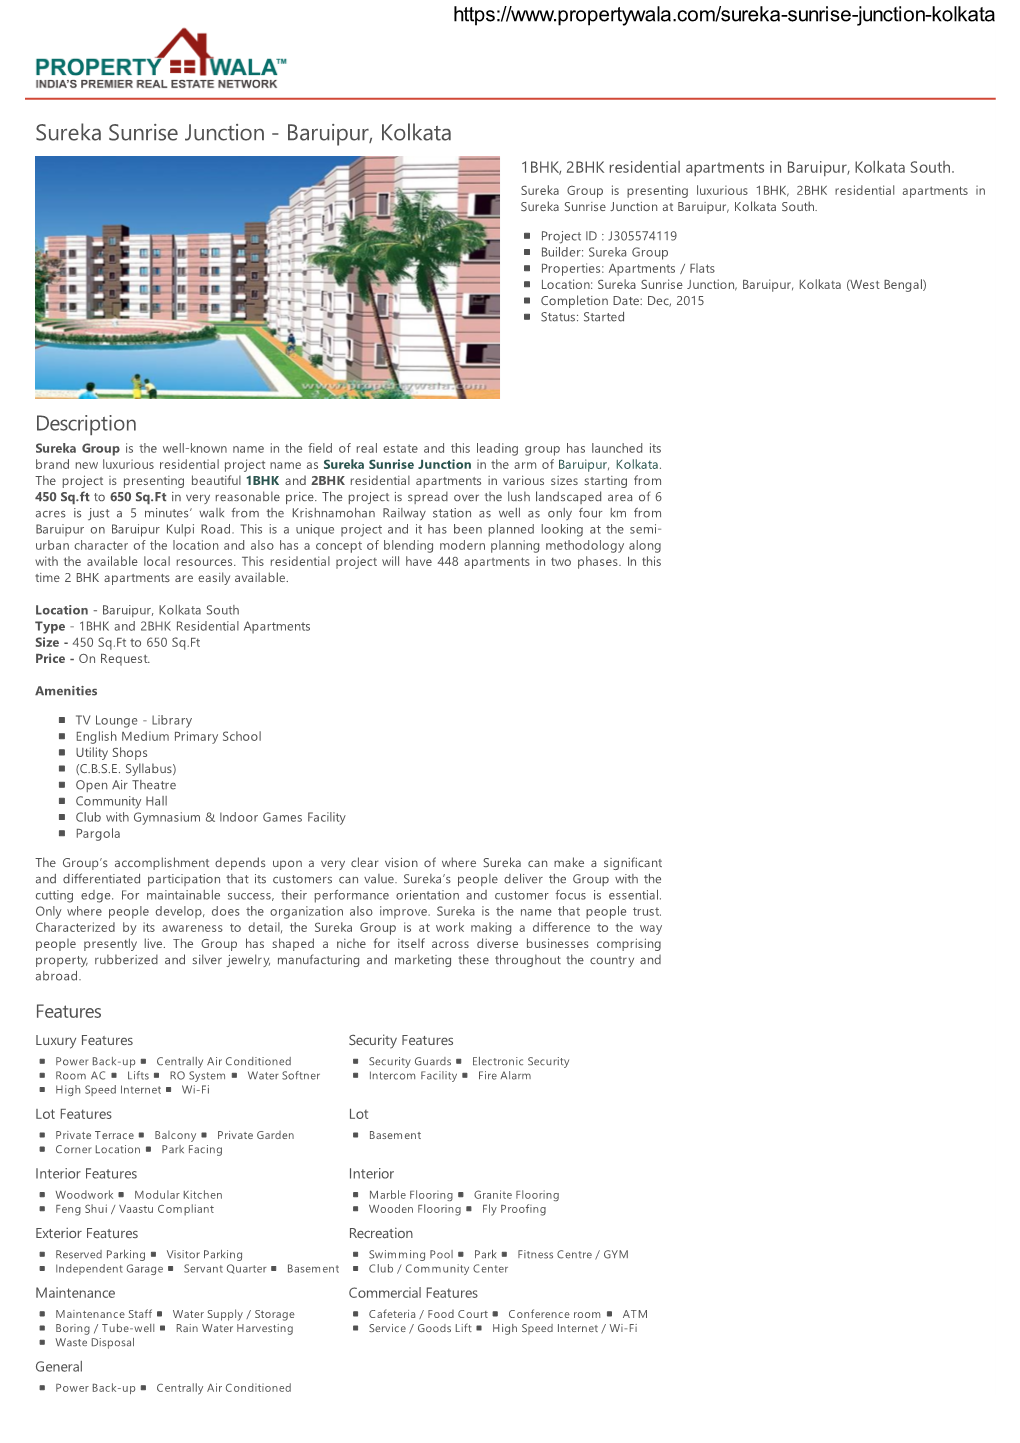 Sureka Sunrise Junction - Baruipur, Kolkata 1BHK, 2BHK Residential Apartments in Baruipur, Kolkata South